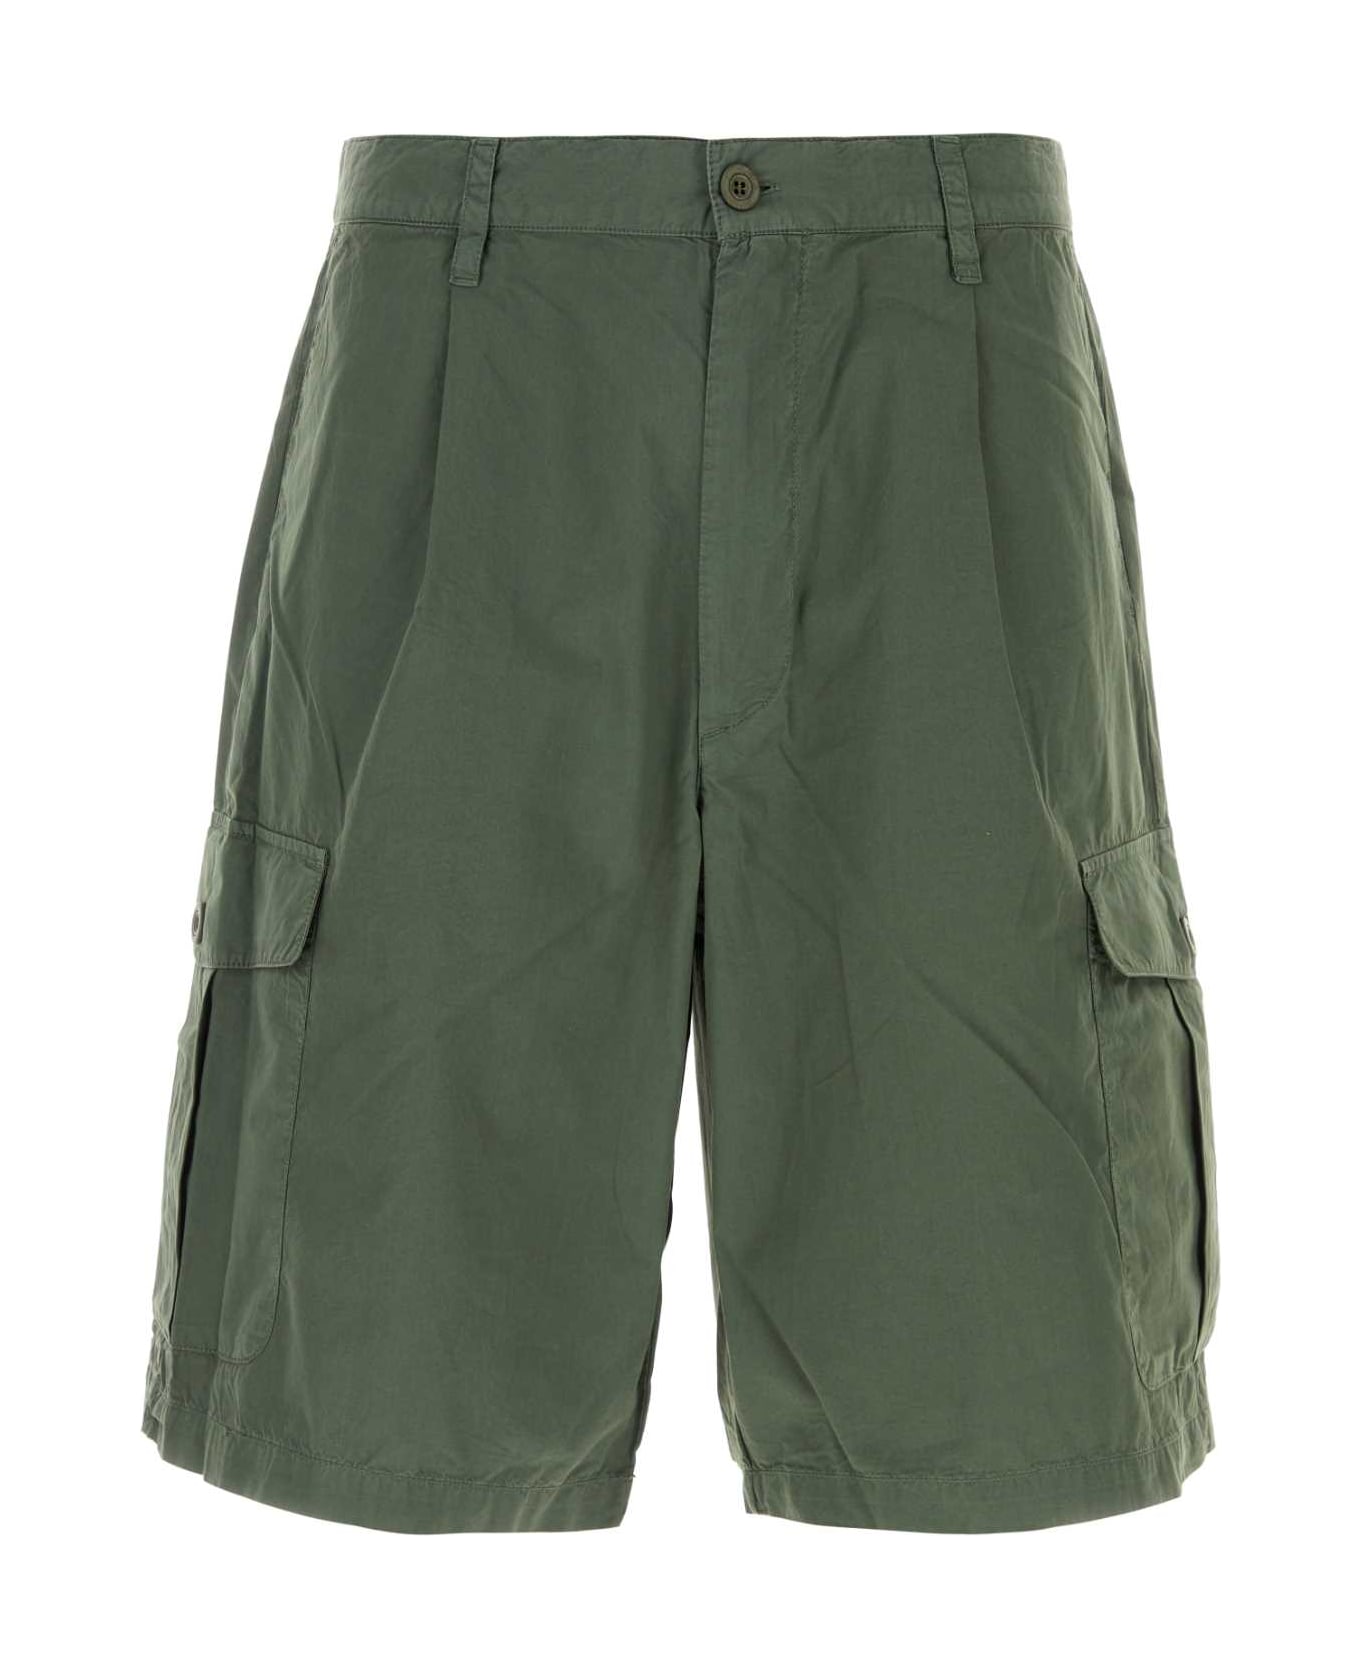 Emporio Armani Dark Green Cotton Bermuda Shorts - 05C1 ショートパンツ